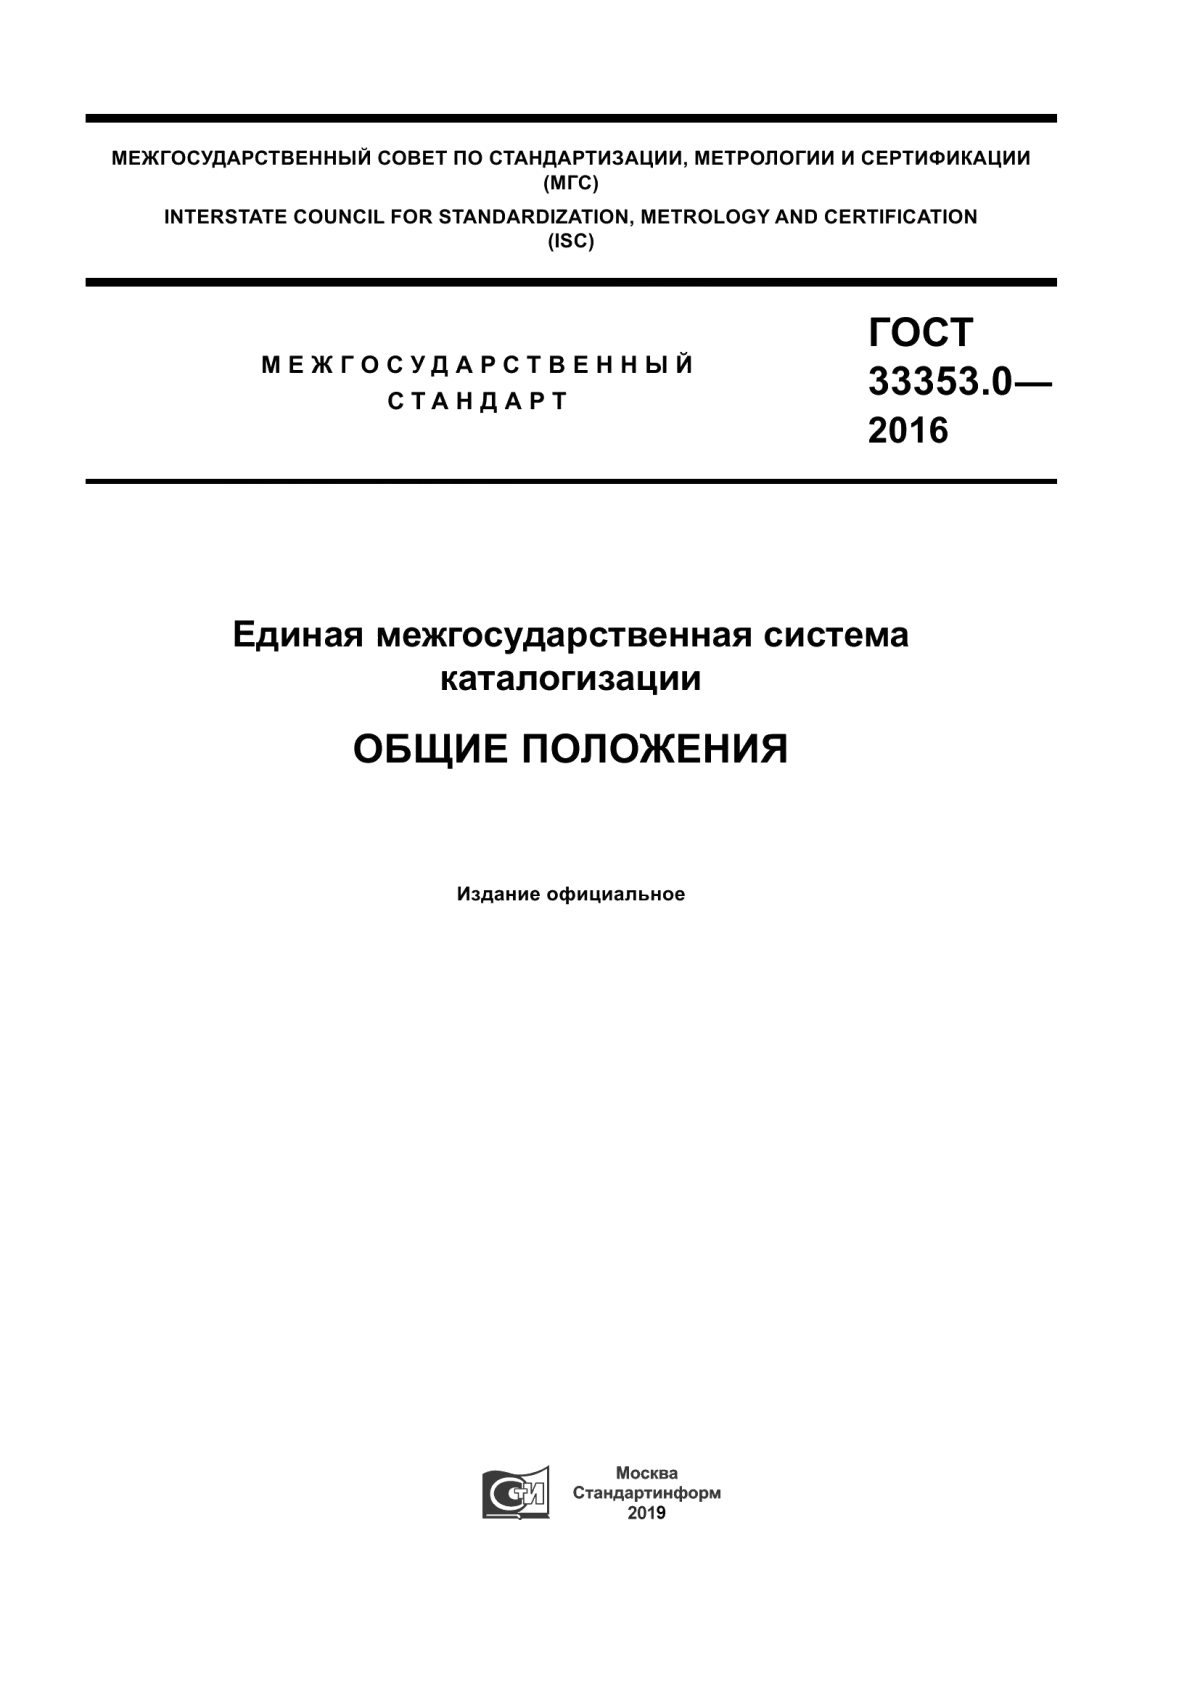 ГОСТ 33353.0-2016 Единая межгосударственная система каталогизации. Общие положения